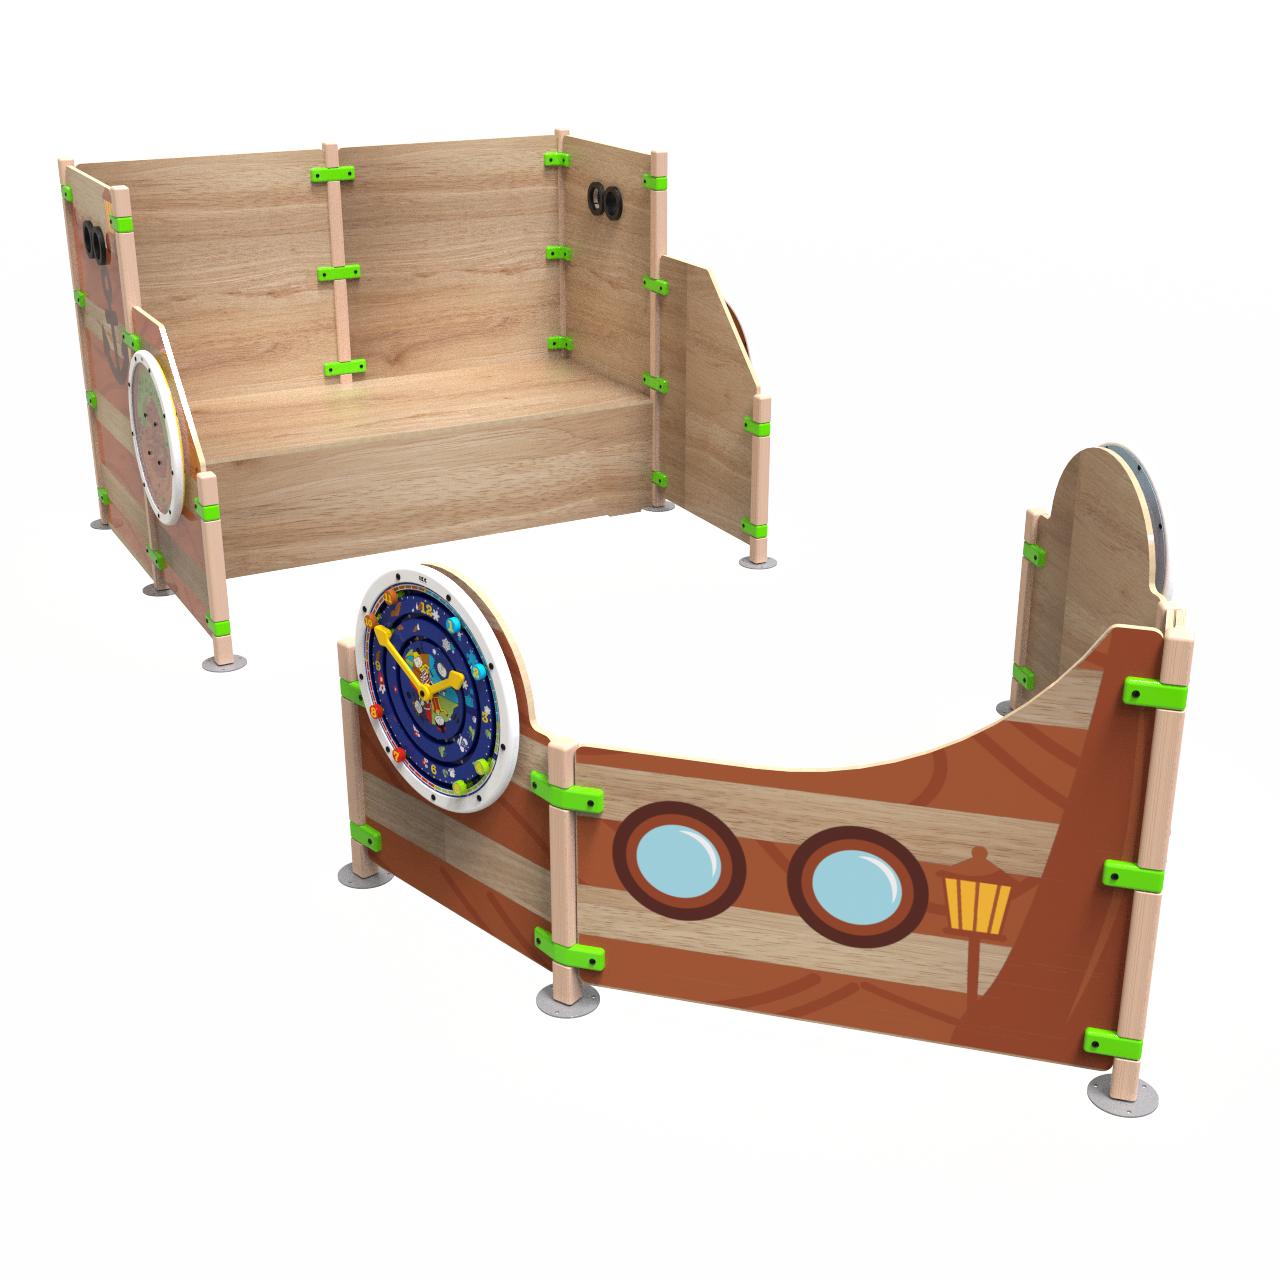 Это изображение показывает детские игровые домики Ship ahoy